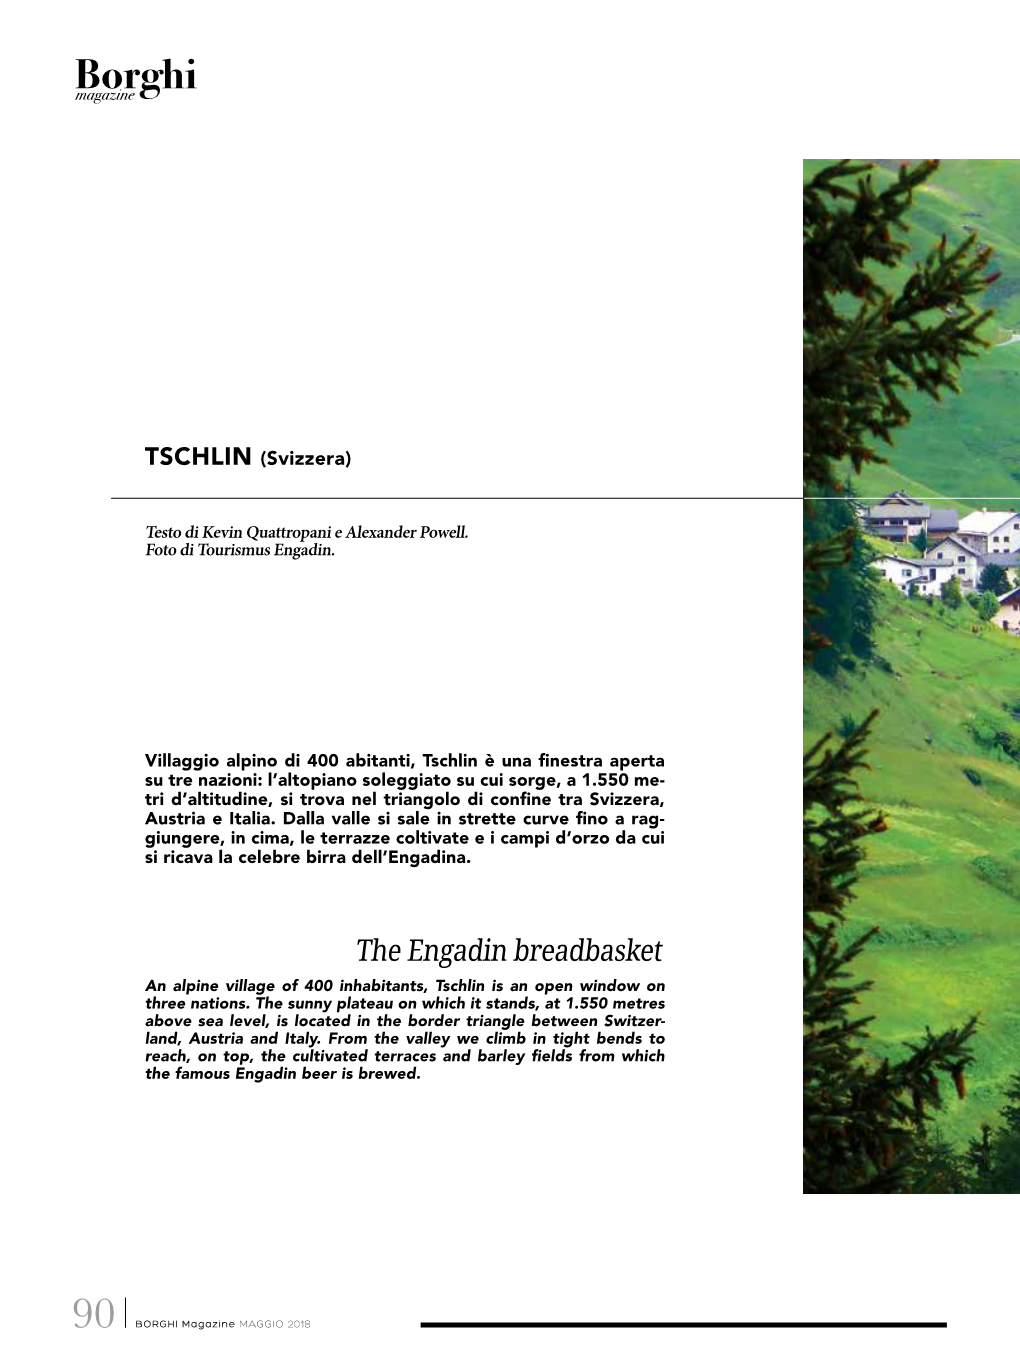 The Engadin Breadbasket an Alpine Village of 400 Inhabitants, Tschlin Is an Open Window on Three Nations